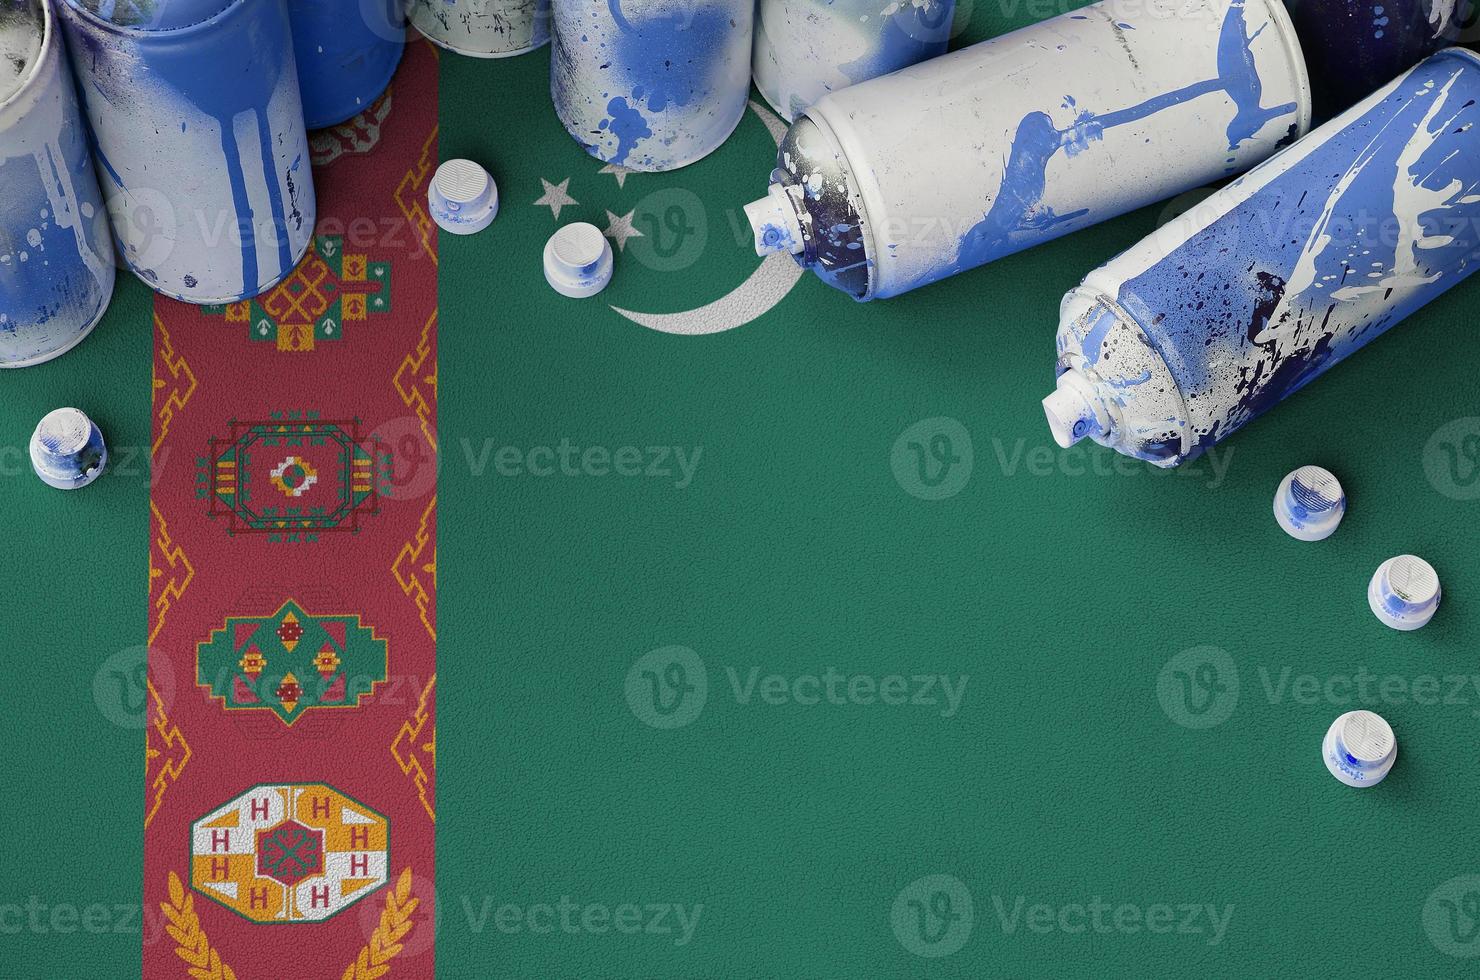 turkmenistan flagga och få Begagnade aerosol spray burkar för graffiti målning. gata konst kultur begrepp foto